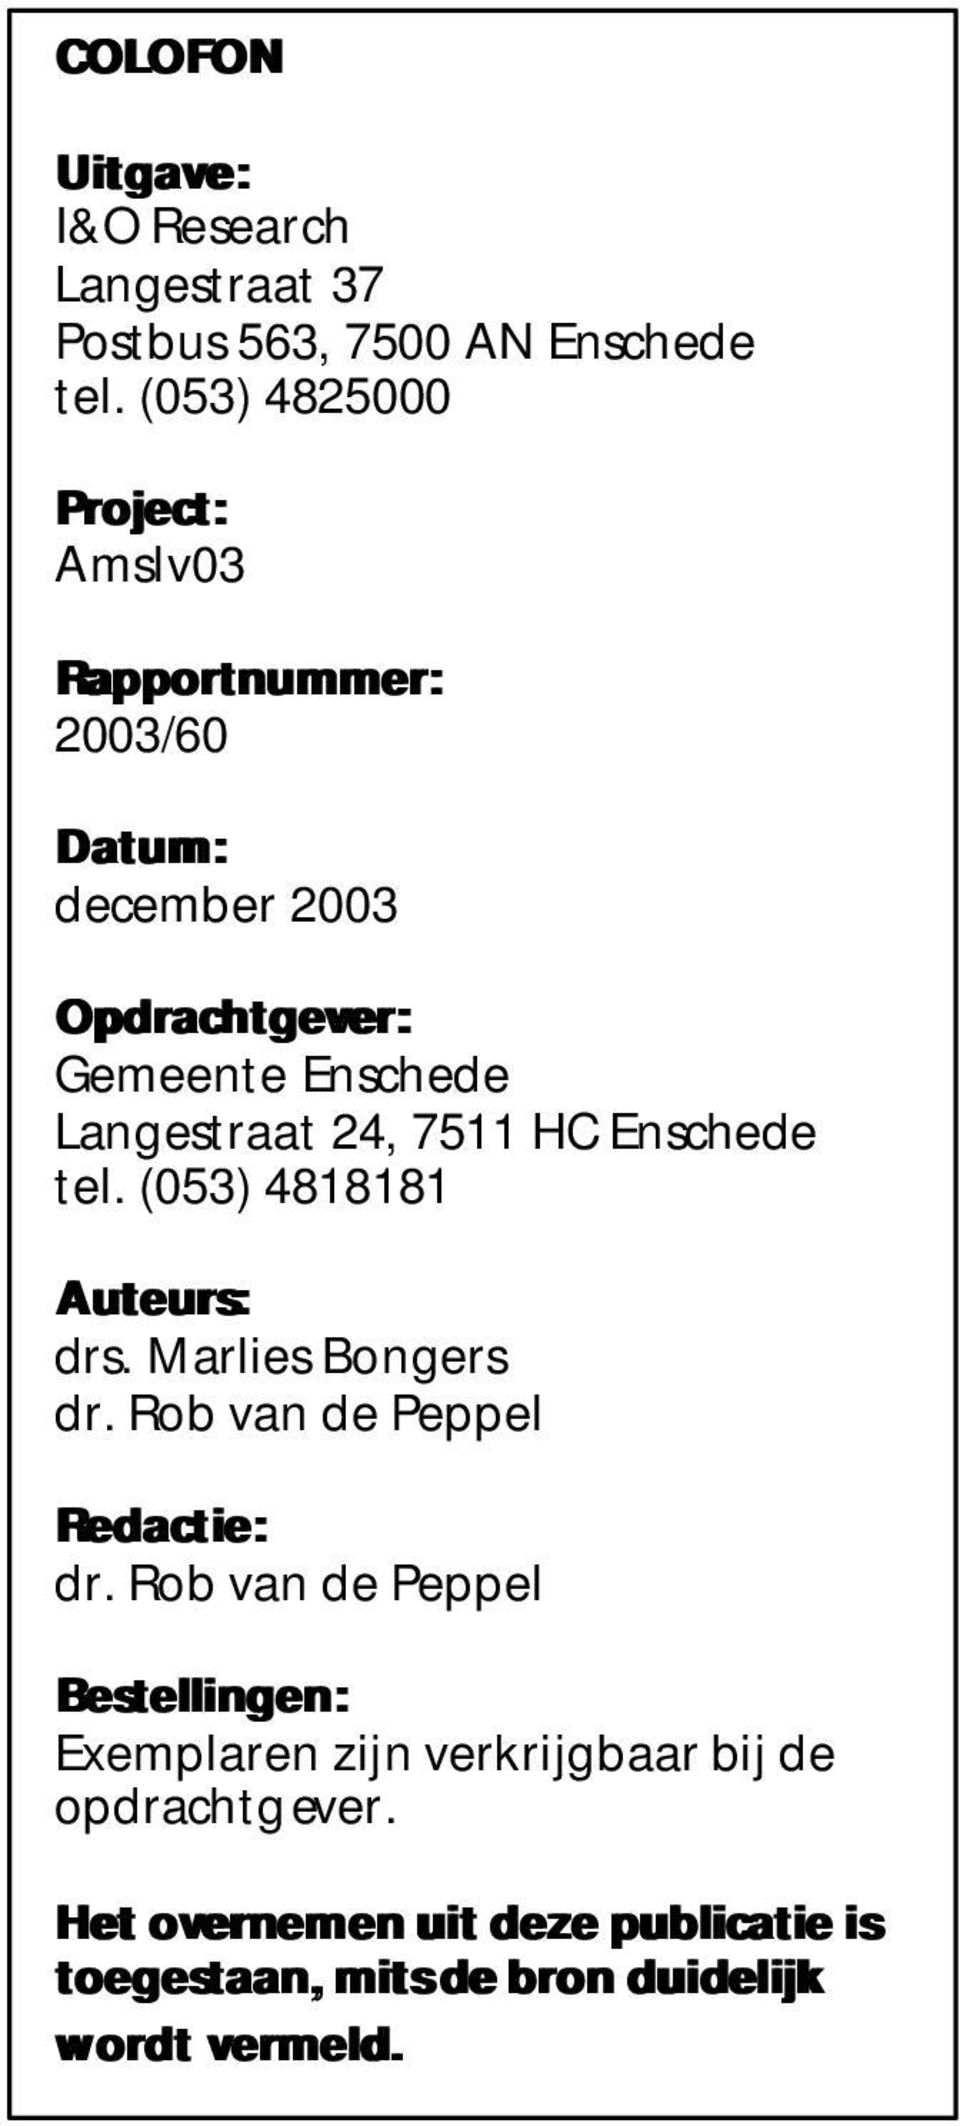 Langestraat 24, 7511 HC Enschede tel. (053) 4818181 Auteurs: drs. Marlies Bongers dr. Rob van de Peppel Redactie: dr.